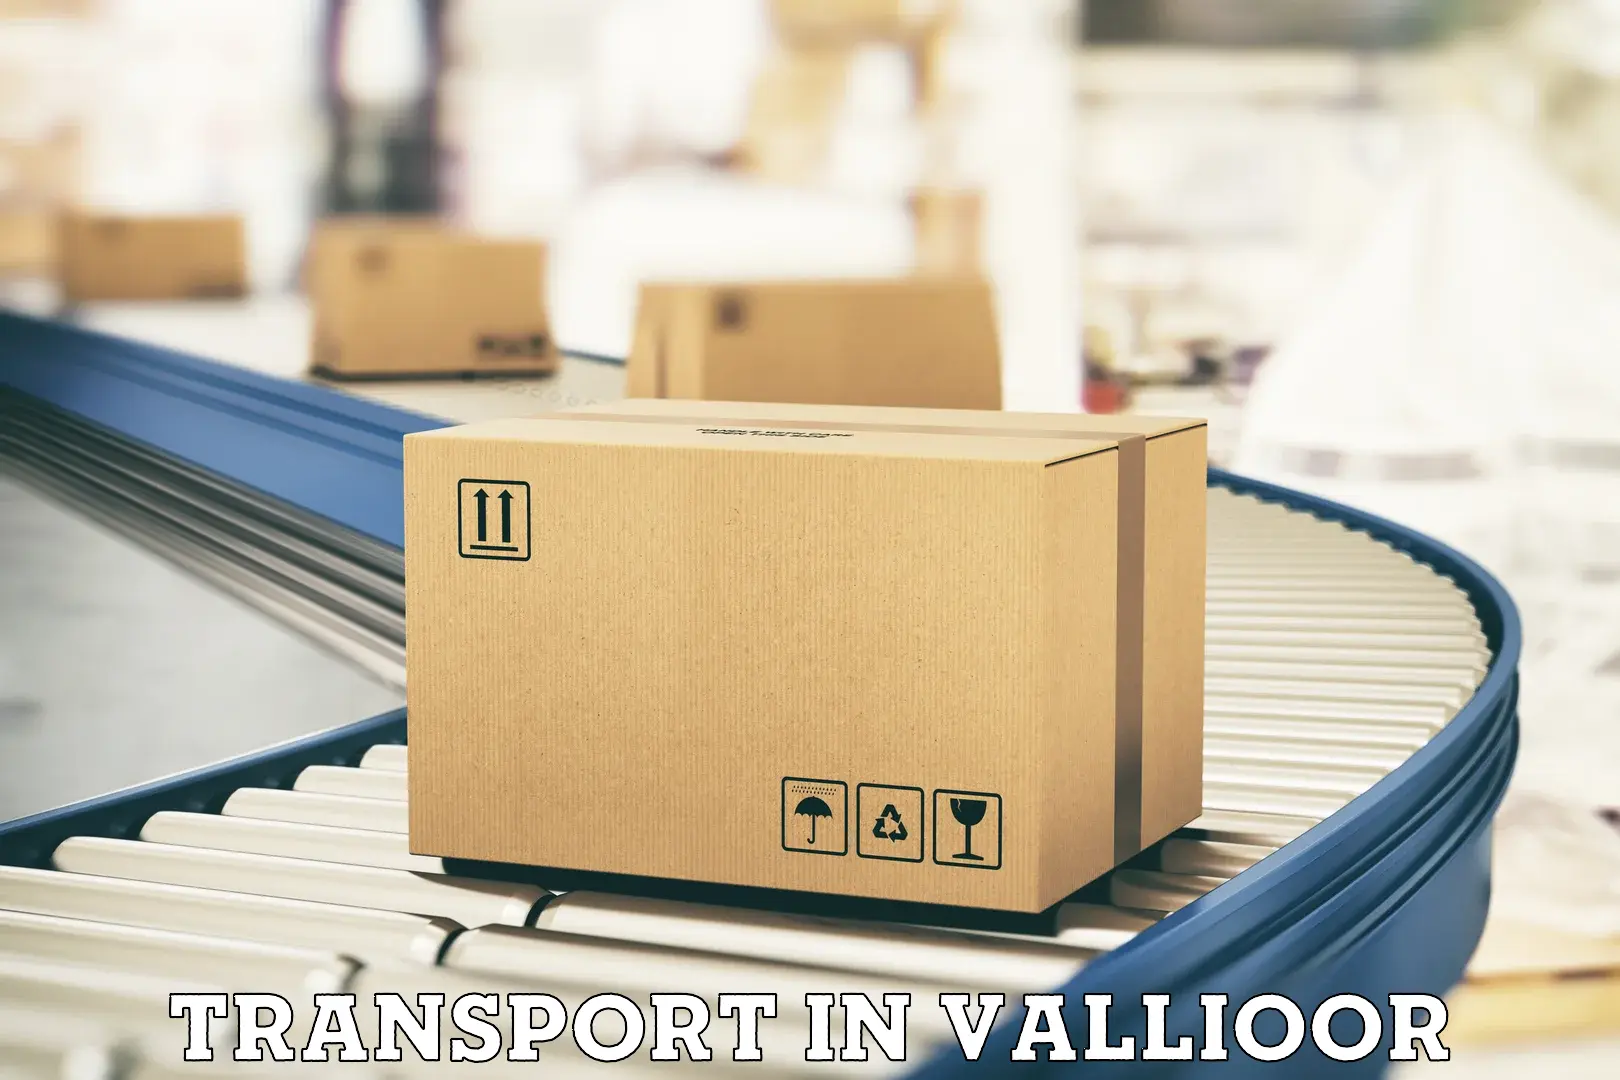 Nearest transport service in Vallioor